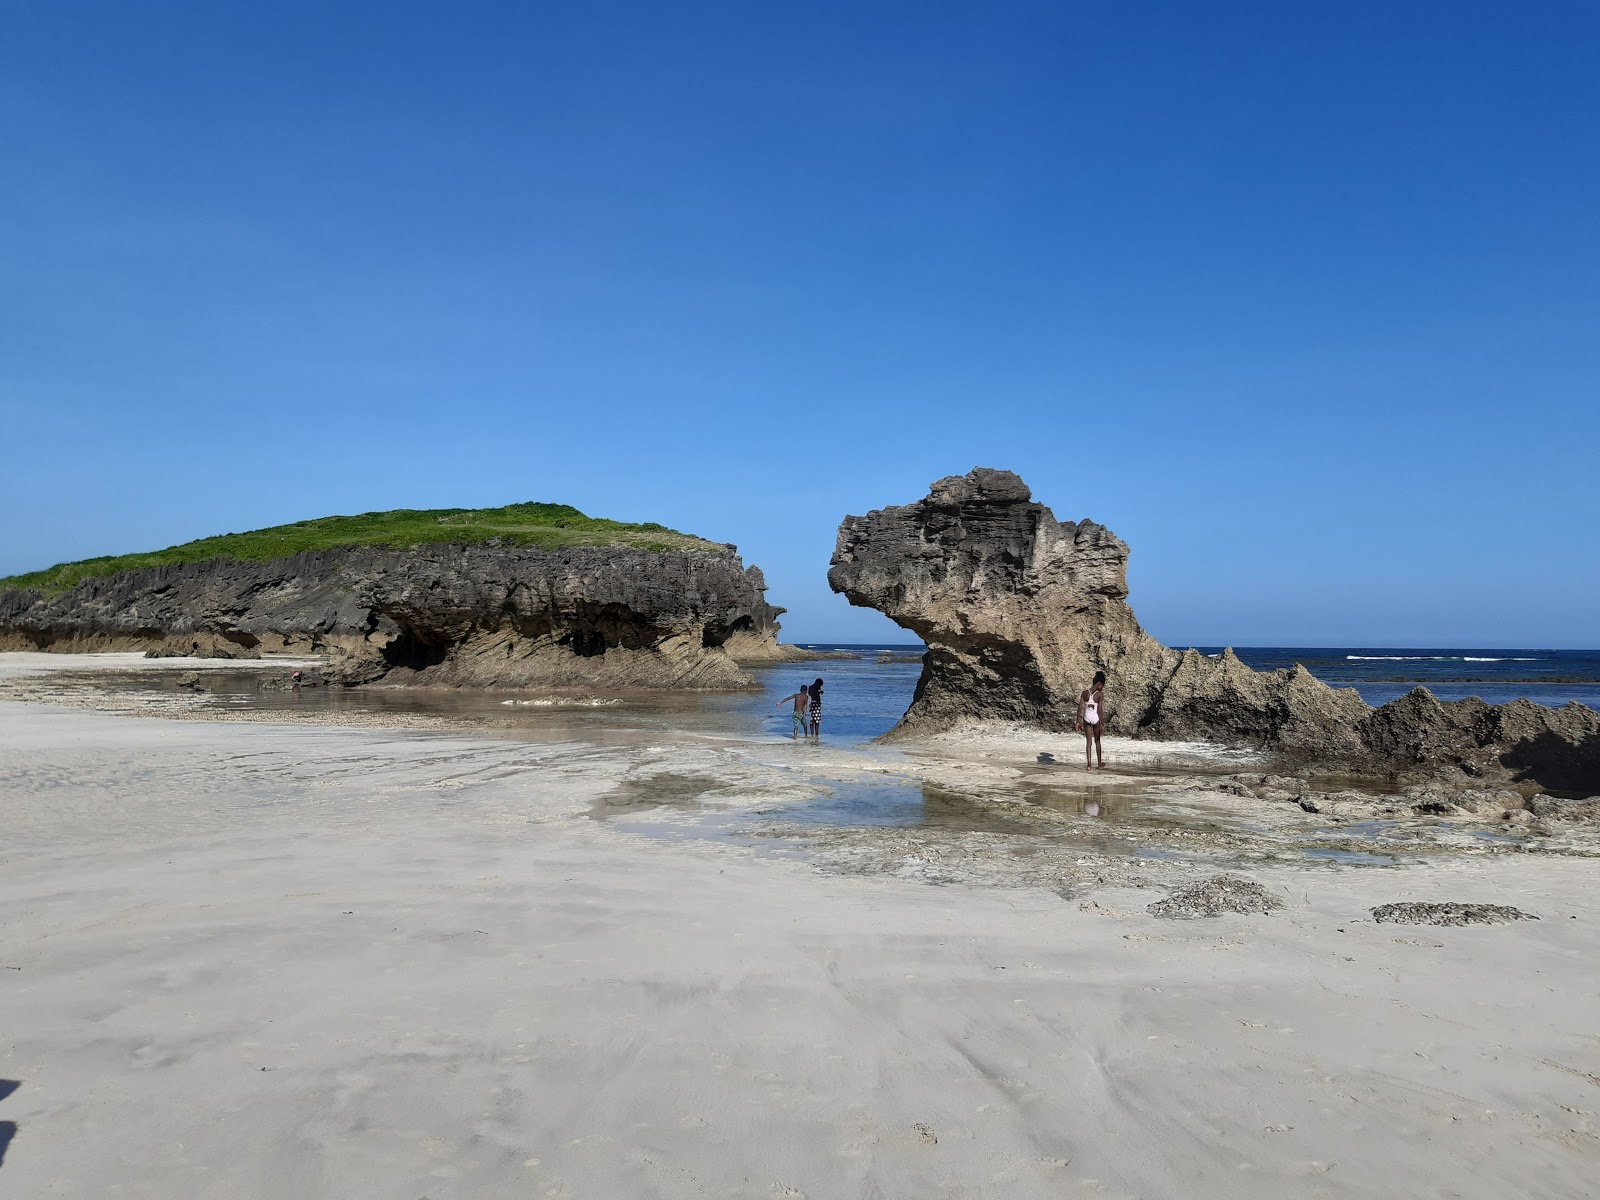 Watamu Bay'in fotoğrafı geniş plaj ile birlikte